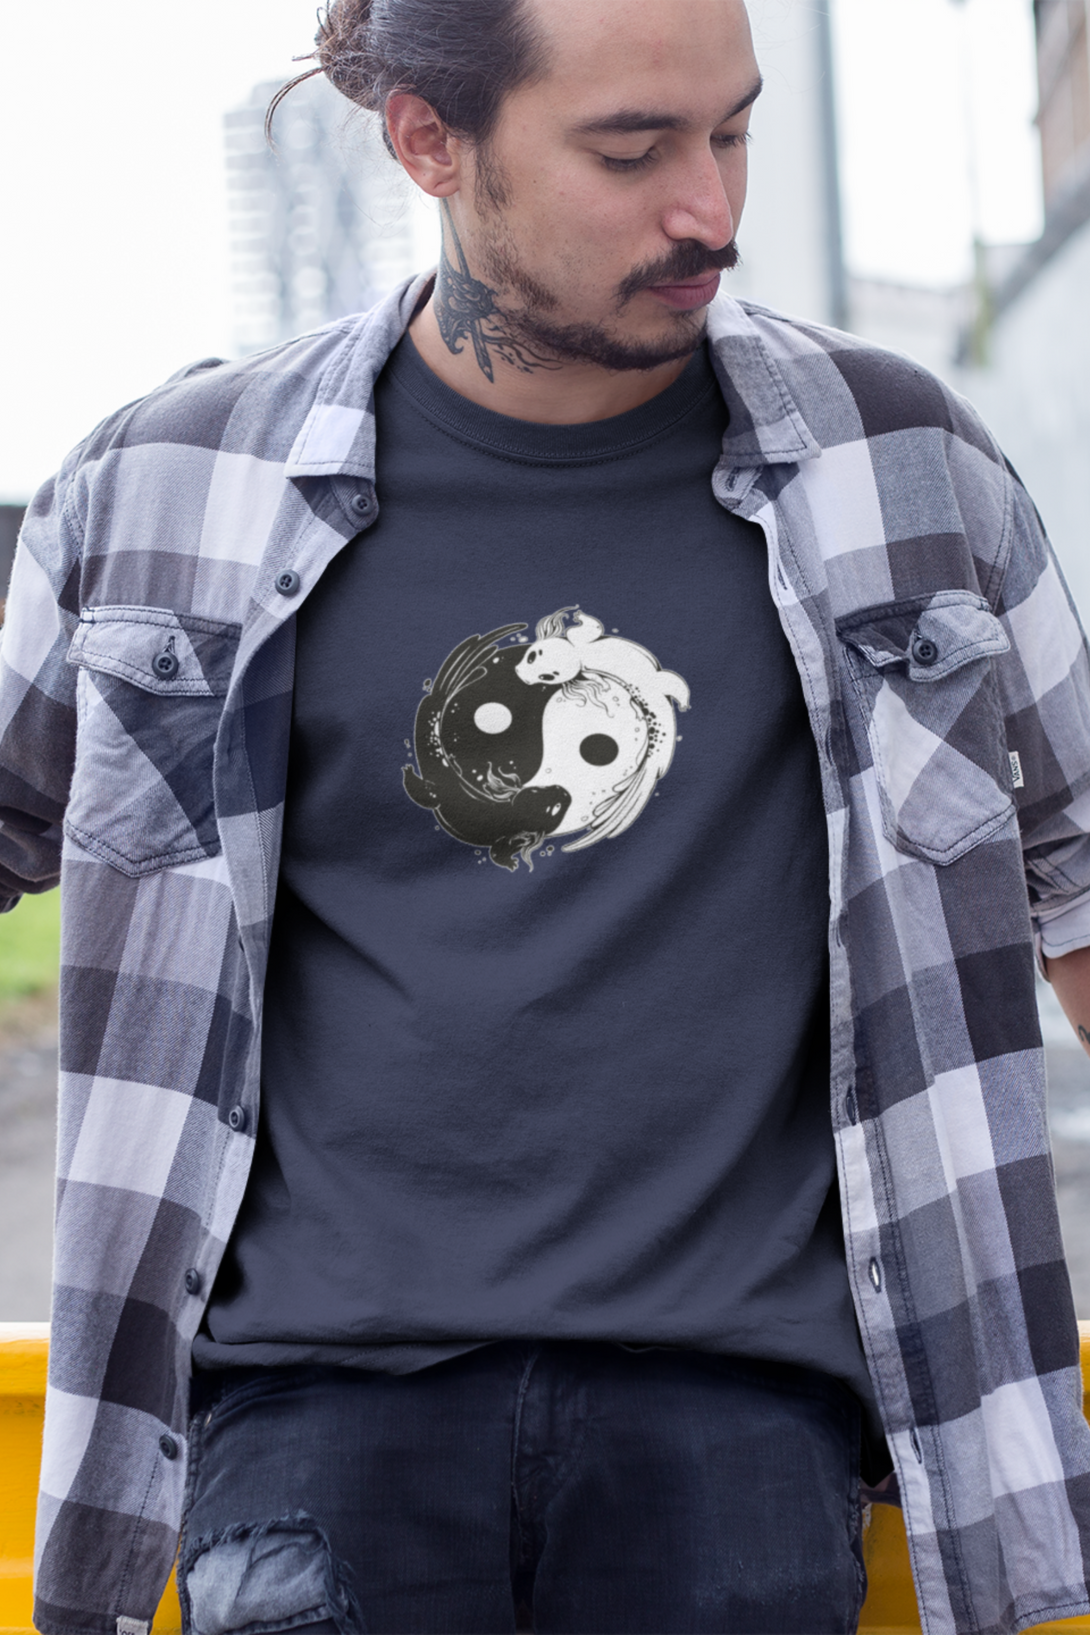 Yin Yang Axolotl Printed T-Shirt For Men - WowWaves